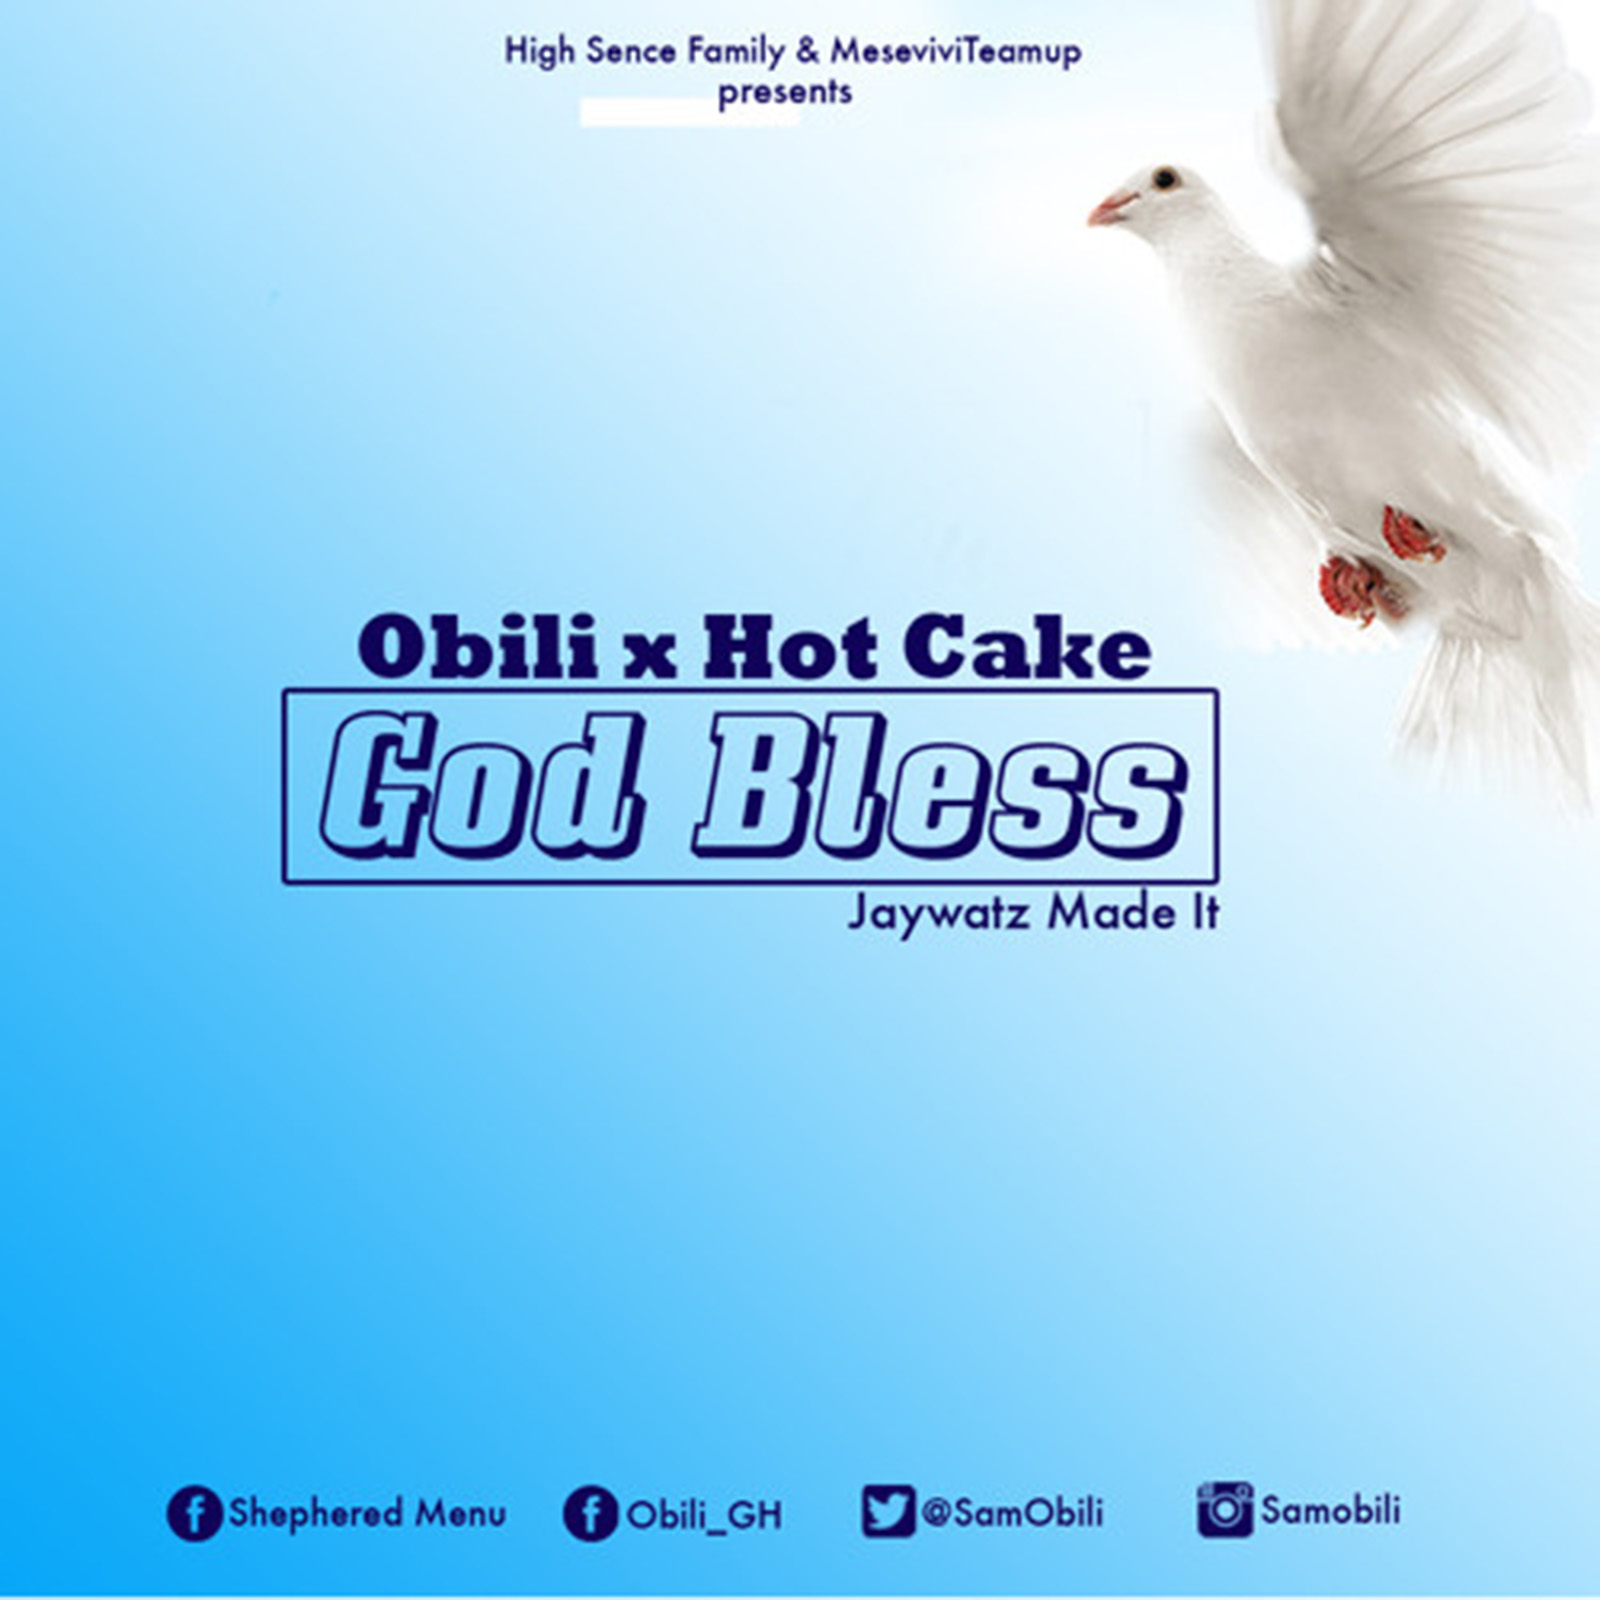 God Bless by Obili & Hot Cake